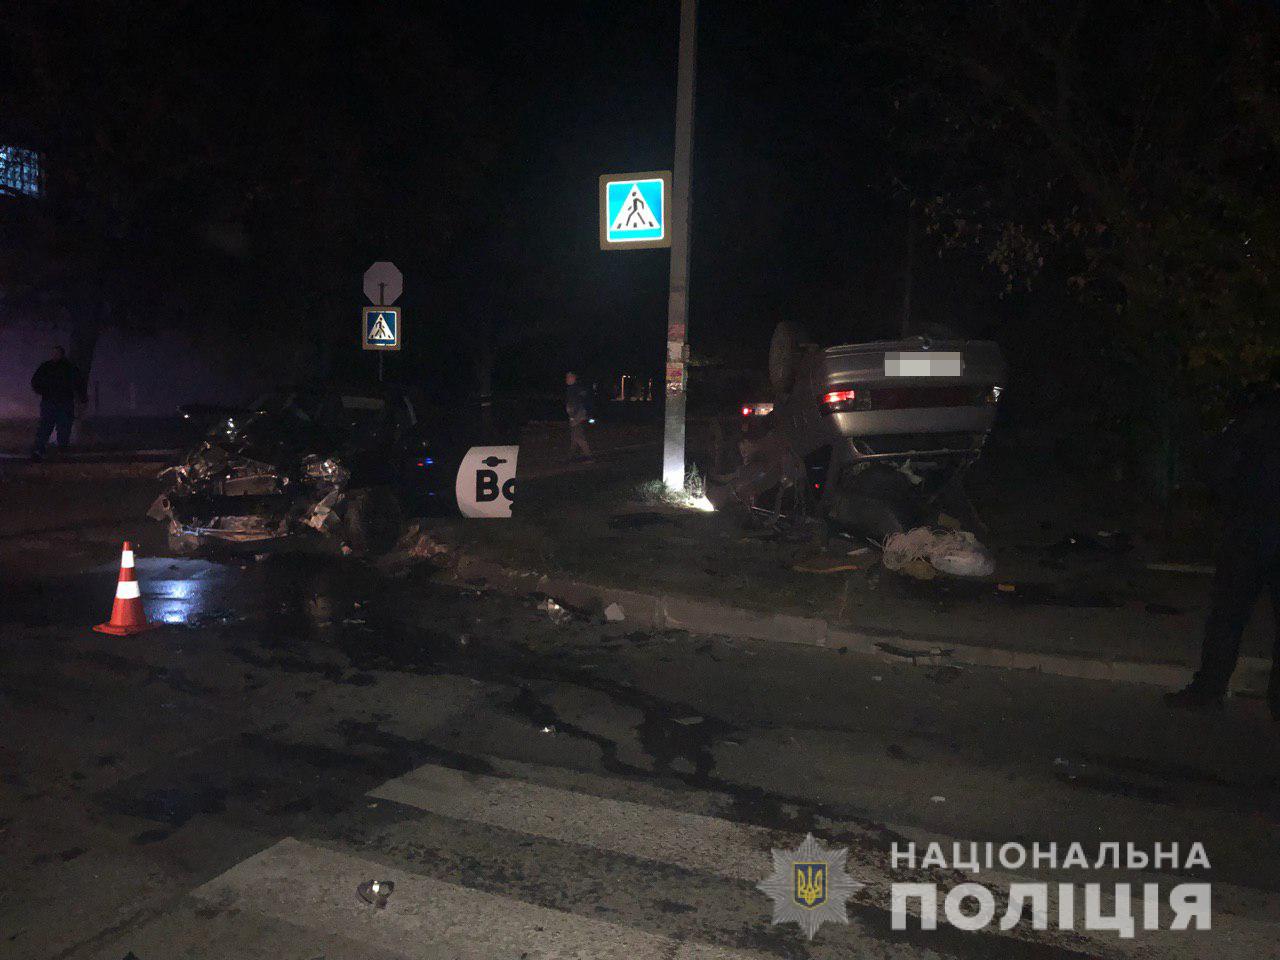 На Целиноградской столкнулись машины, много пострадавших